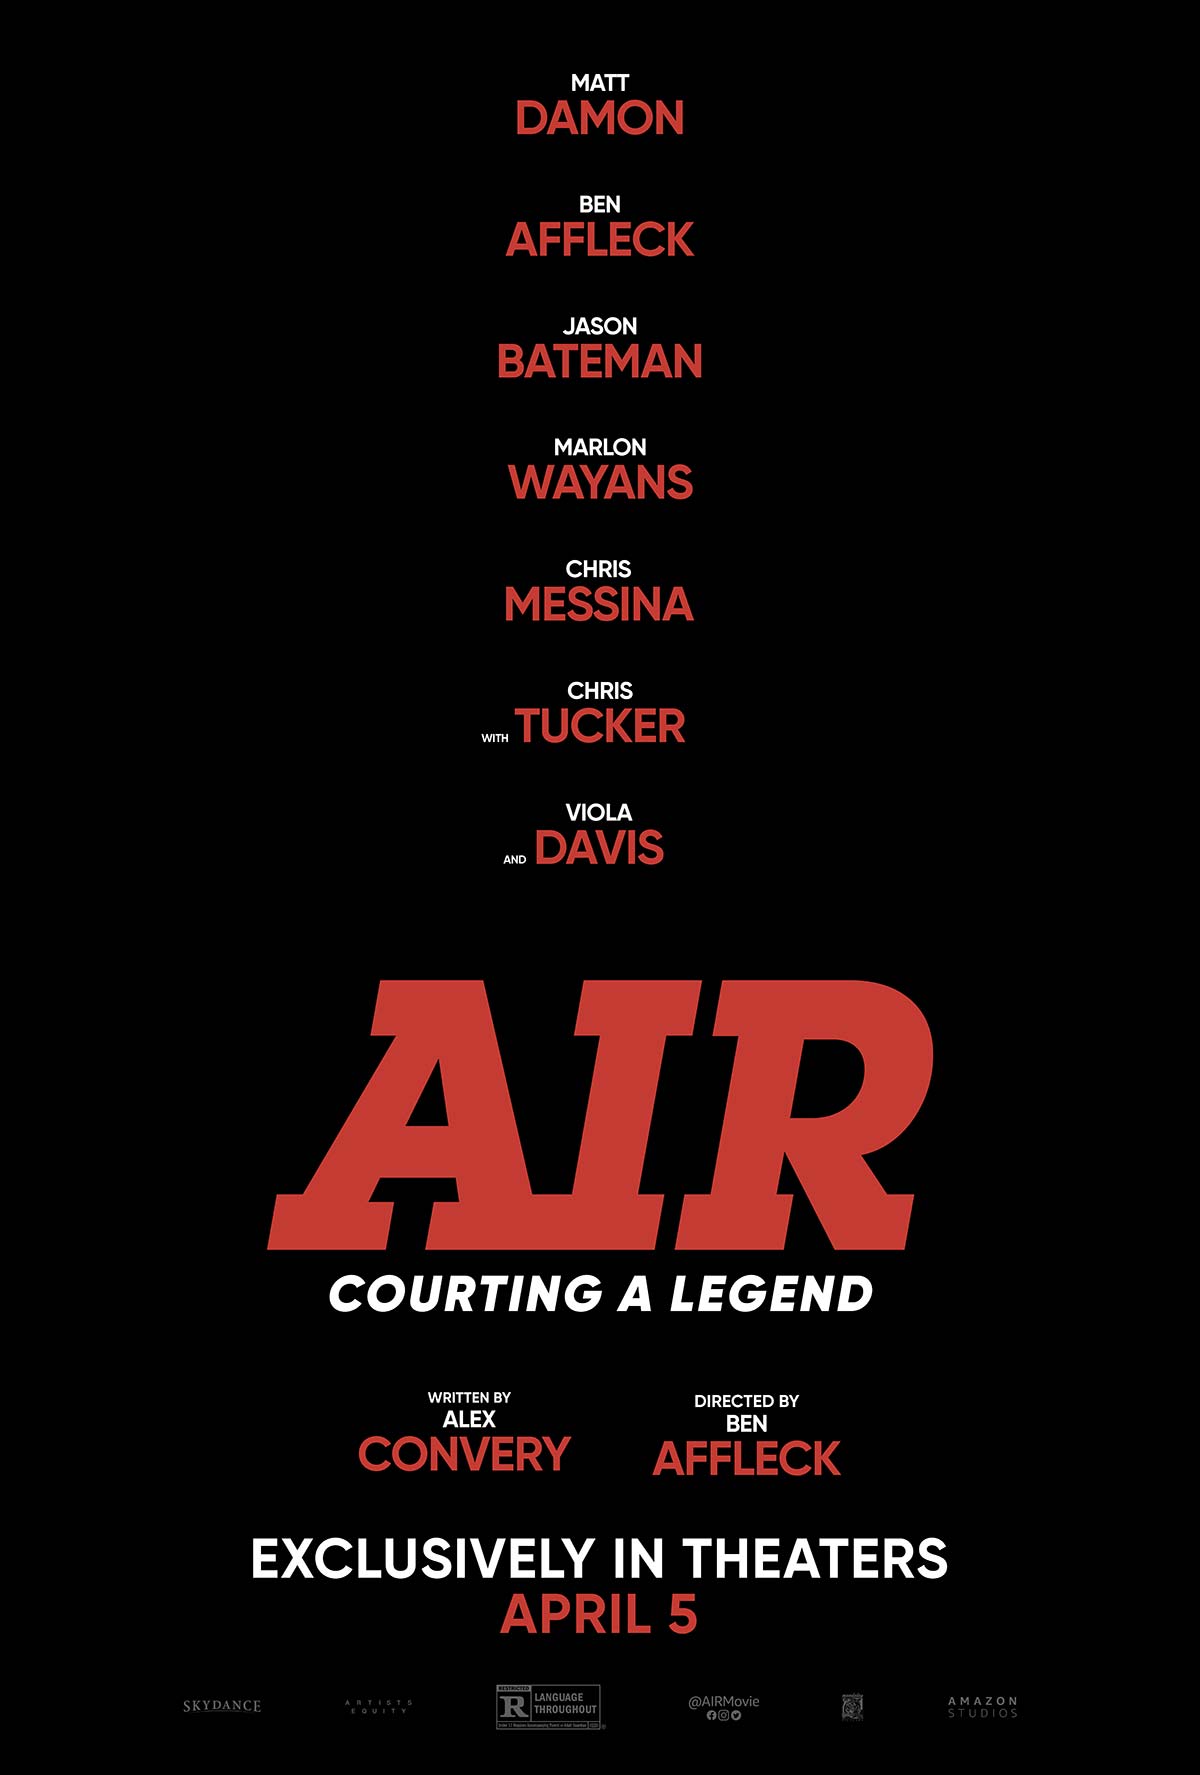 Matt Damon in officiële AIR trailer door Ben Affleck